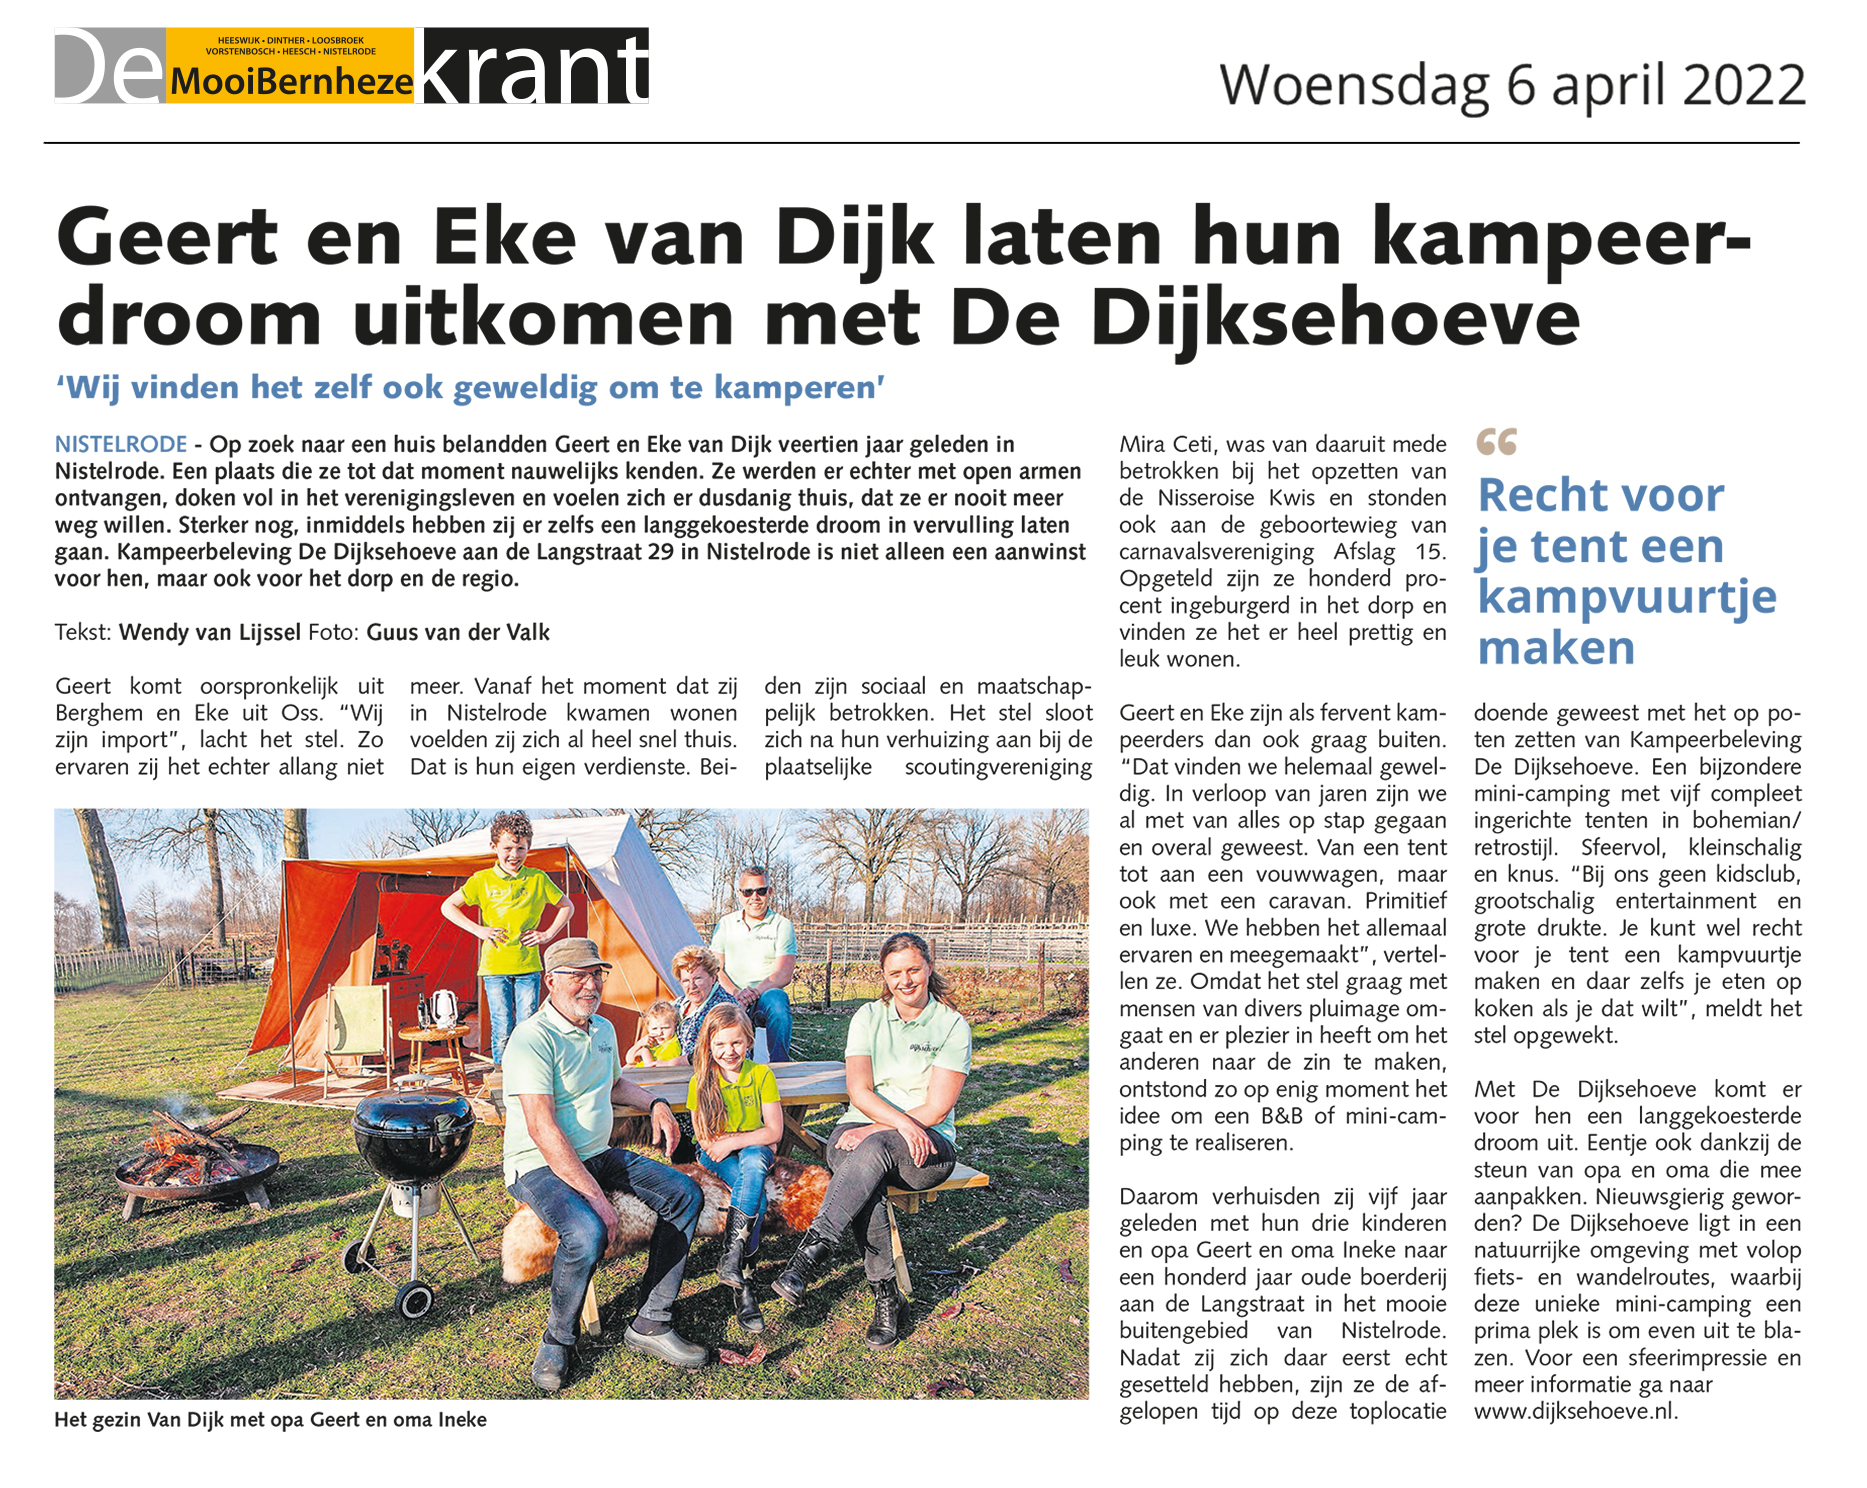 MooiBernheze krant, artikel, Geert en Eke van Dijk, droom, Dijksehoeve, kampvuurtje